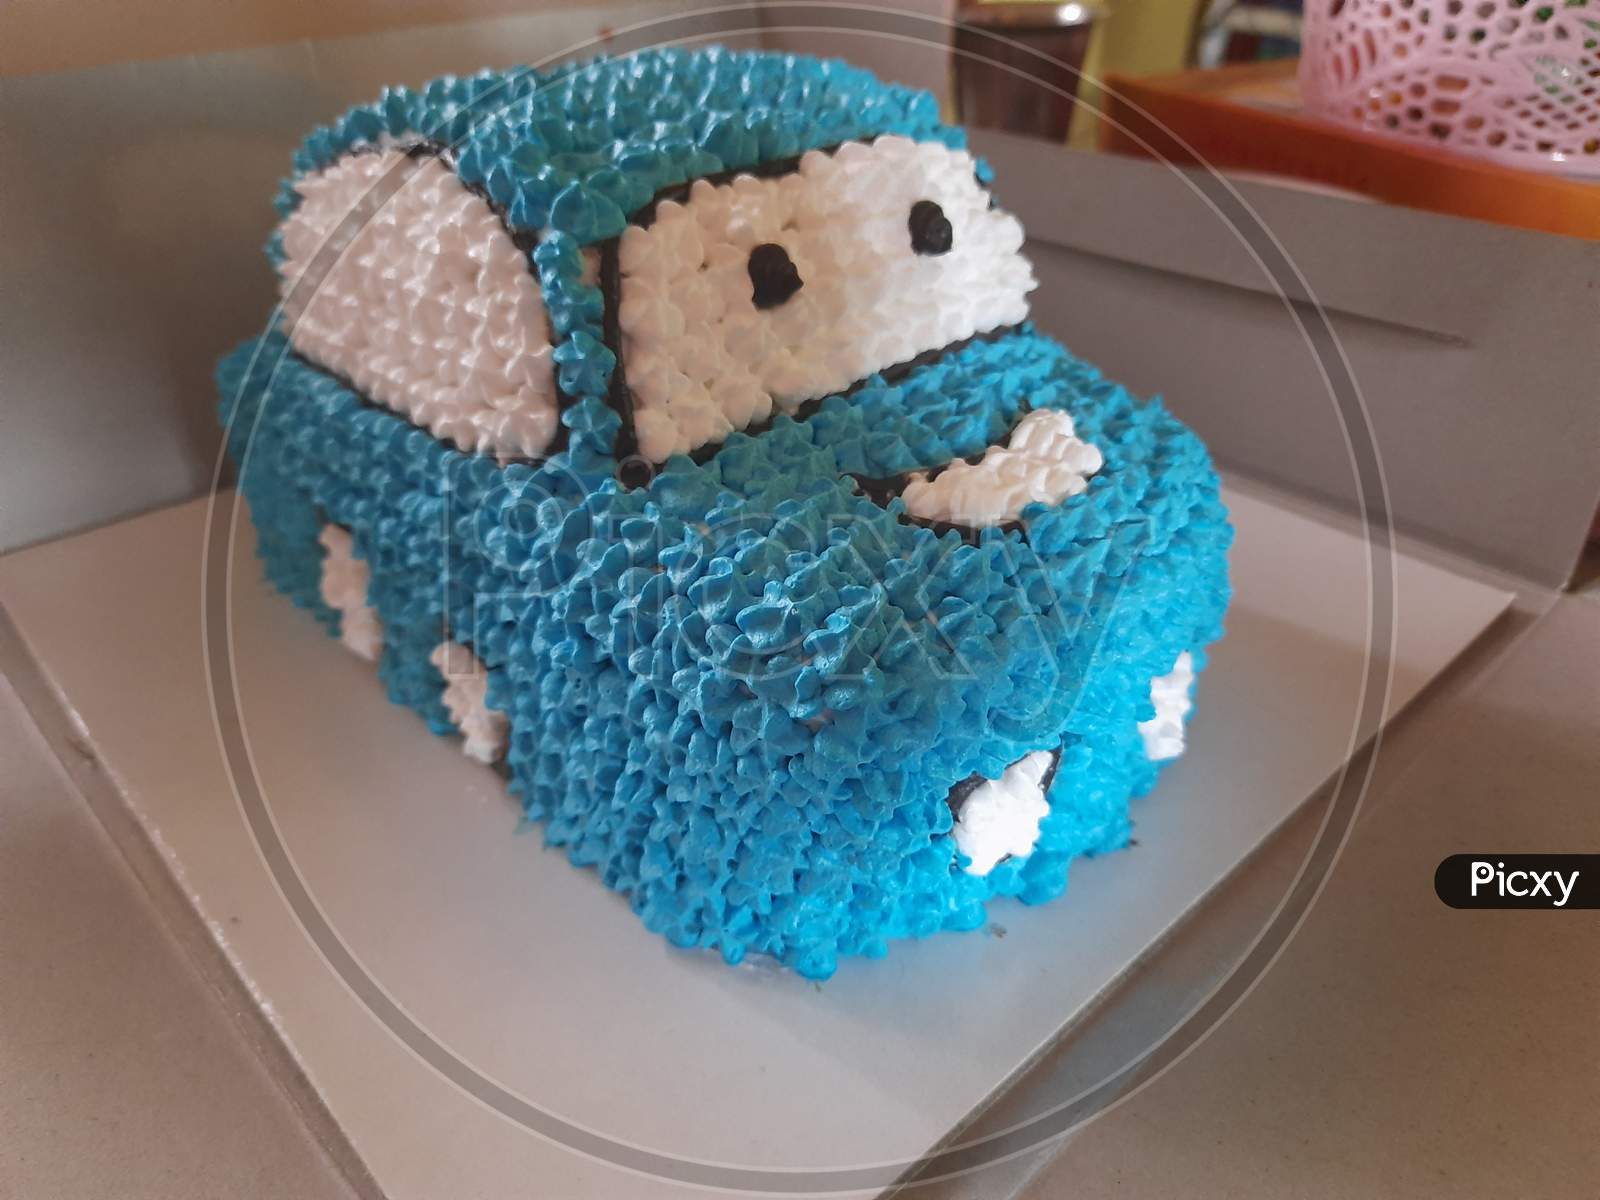 Home made Car design cake